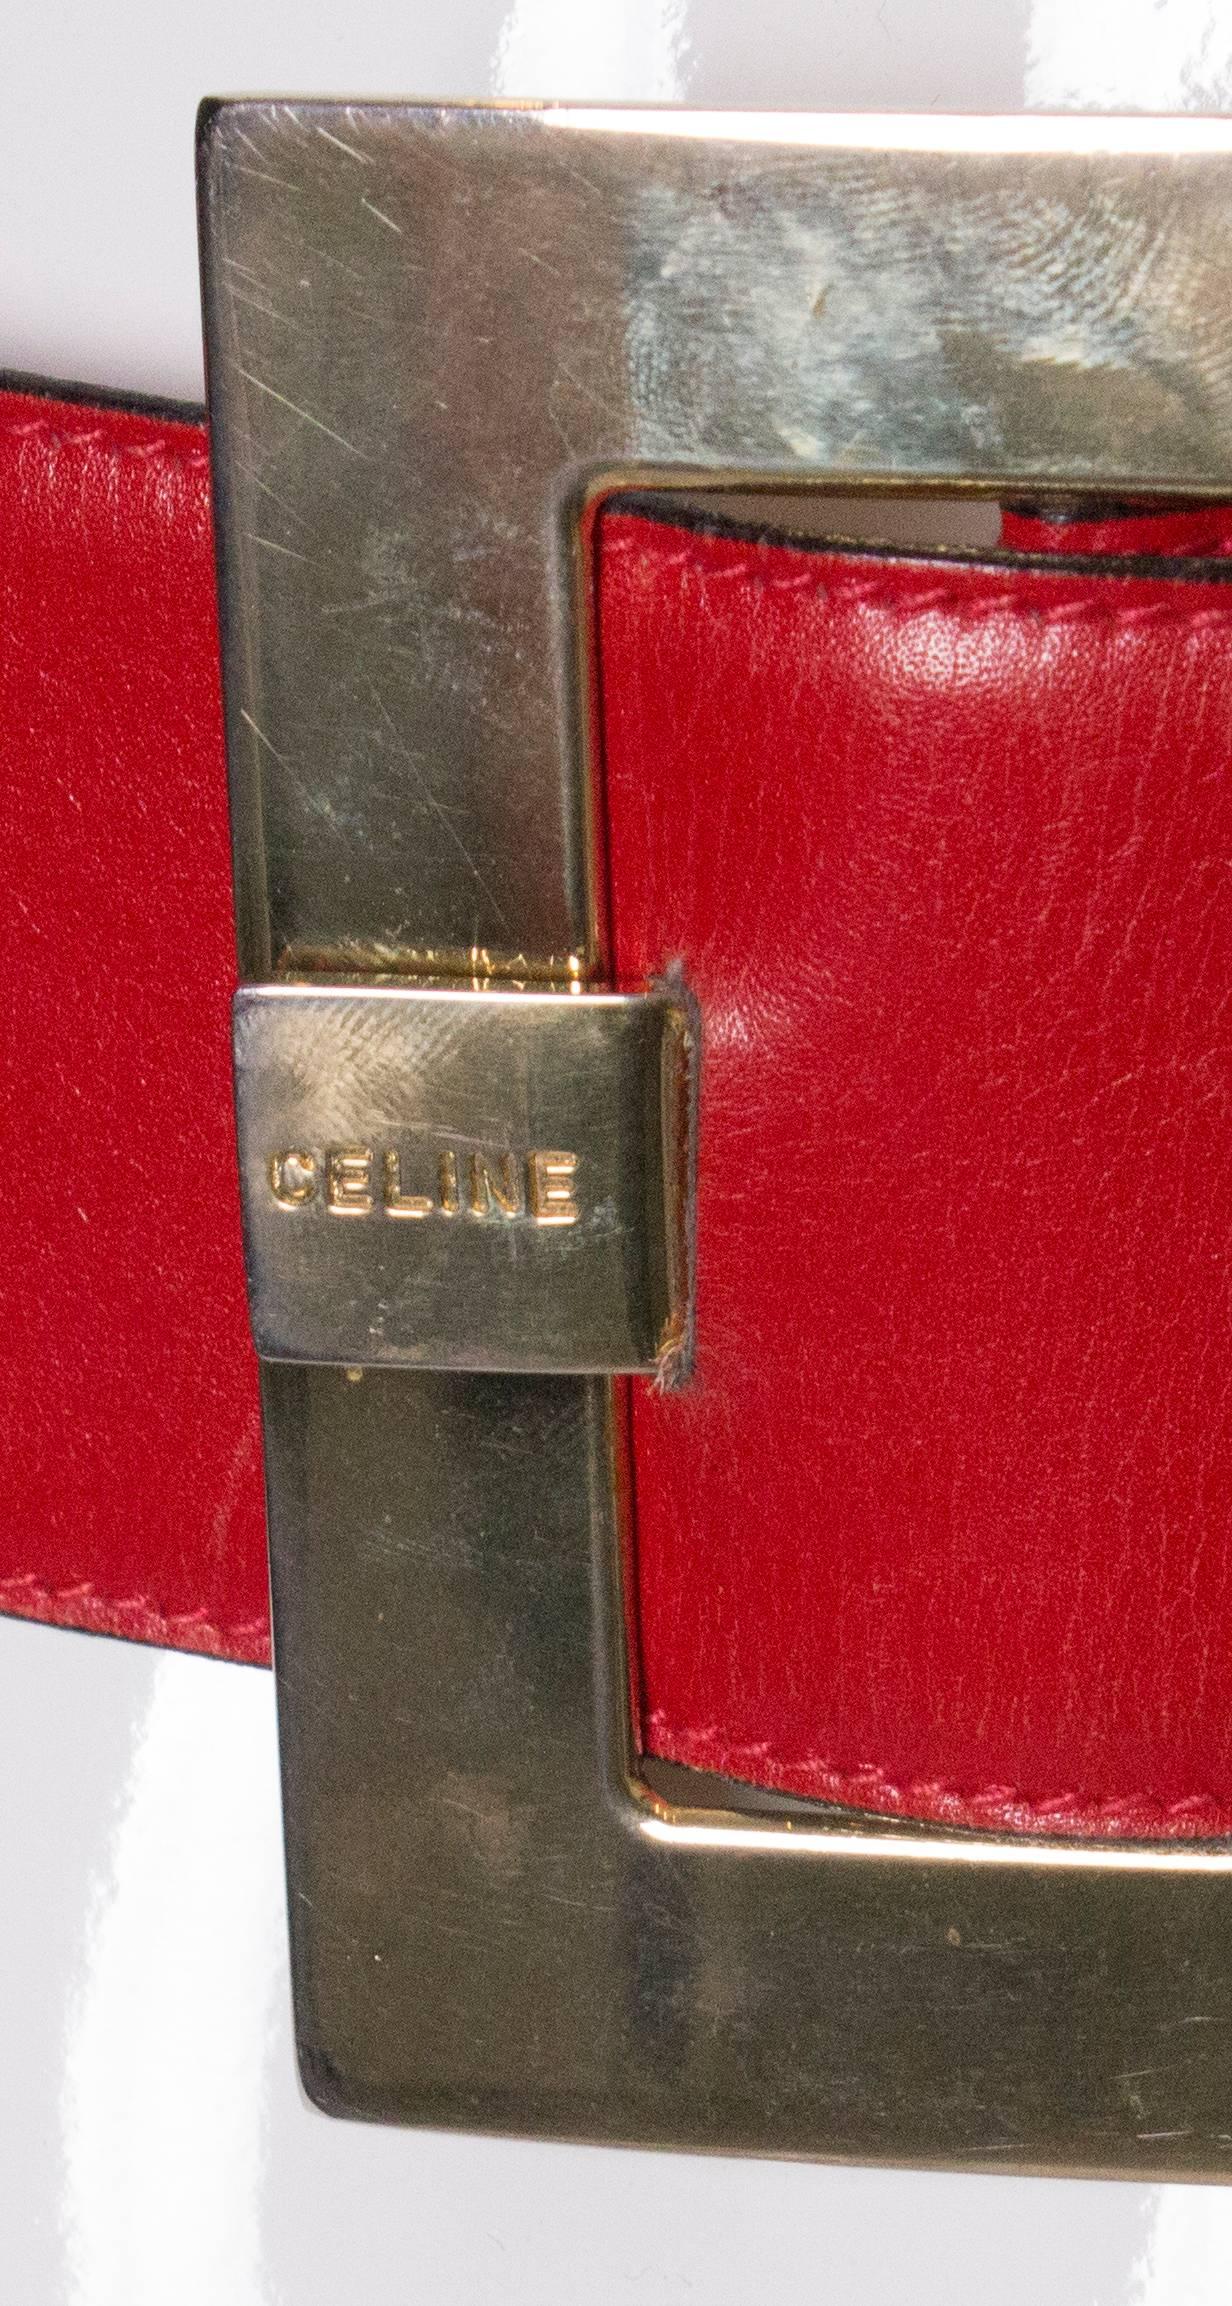 celine belt vintage